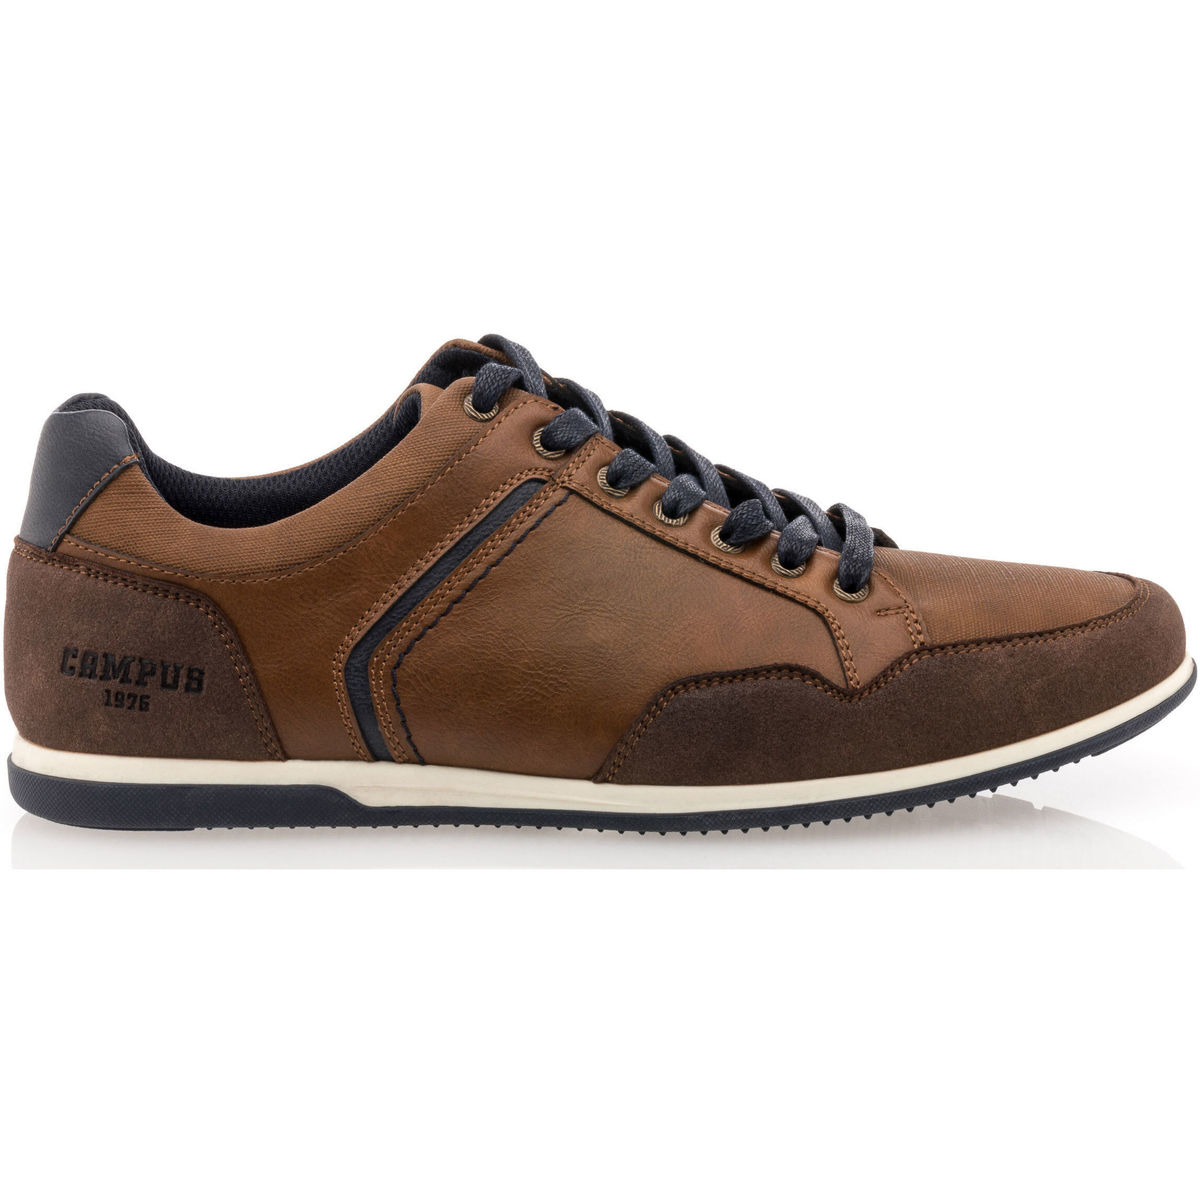 Chaussures Homme ein Sortiment an Sneakers und Bekleidung in frischer Farbgebung Baskets / sneakers Homme Marron Marron